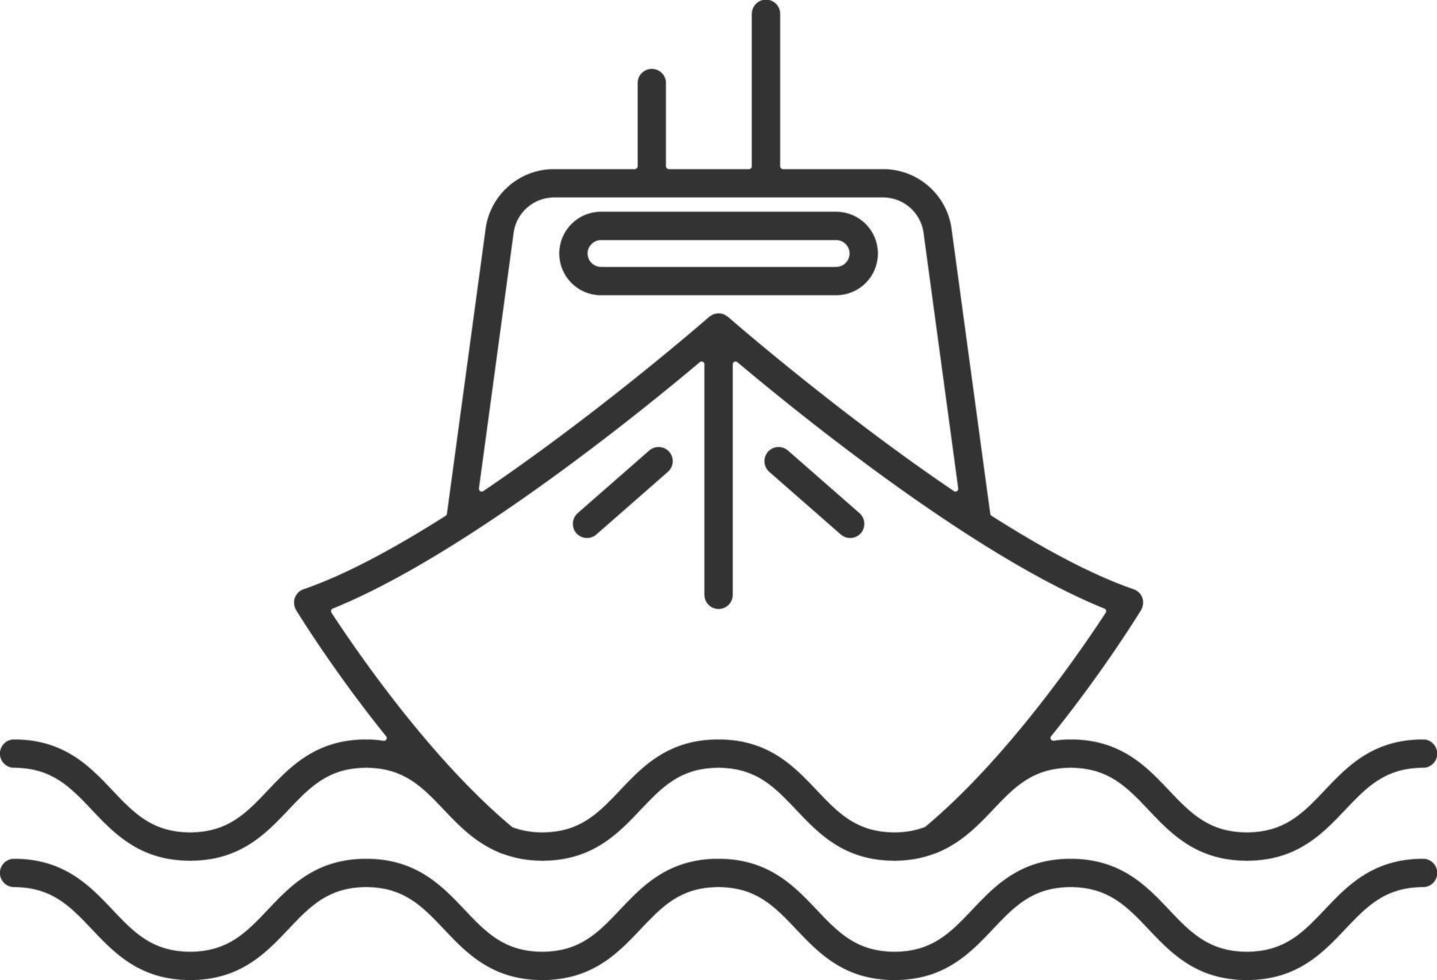 Ship, transport line icon. Simple, modern flat vector illustration for mobile app, website or desktop app on gray background